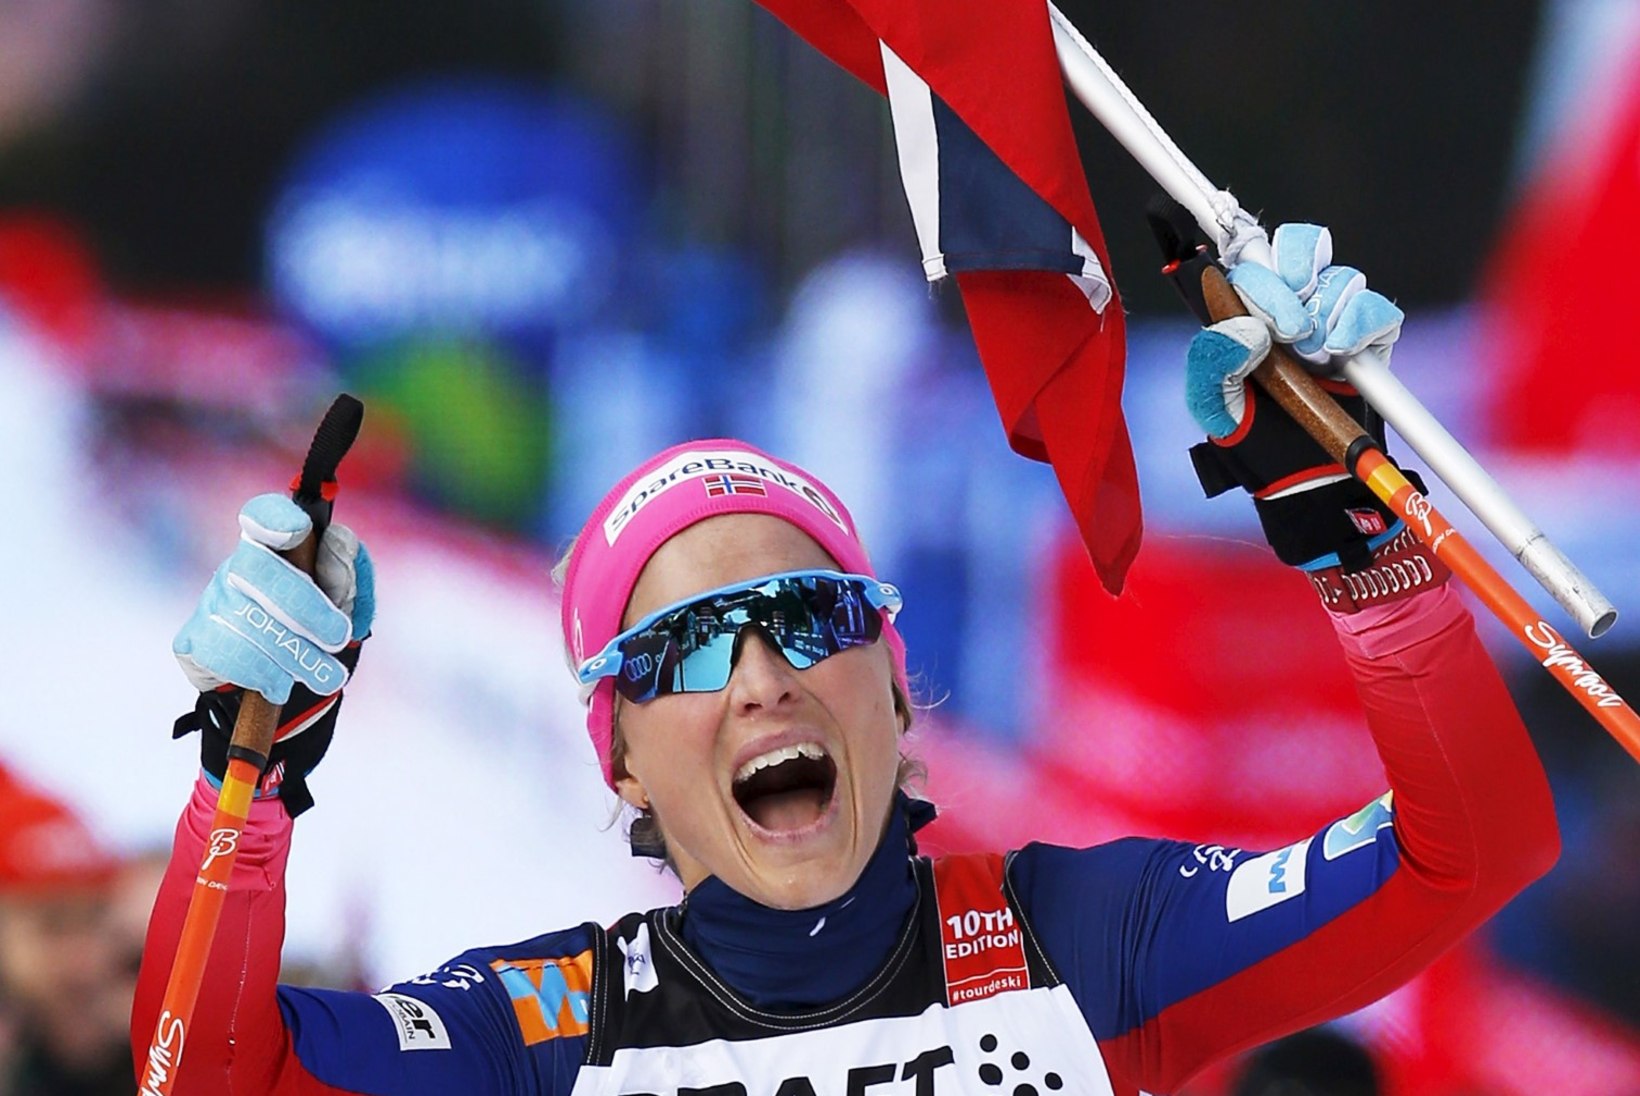 Soome olümpiakomitee arst peab Tour de Skil võistlemist ohtlikuks